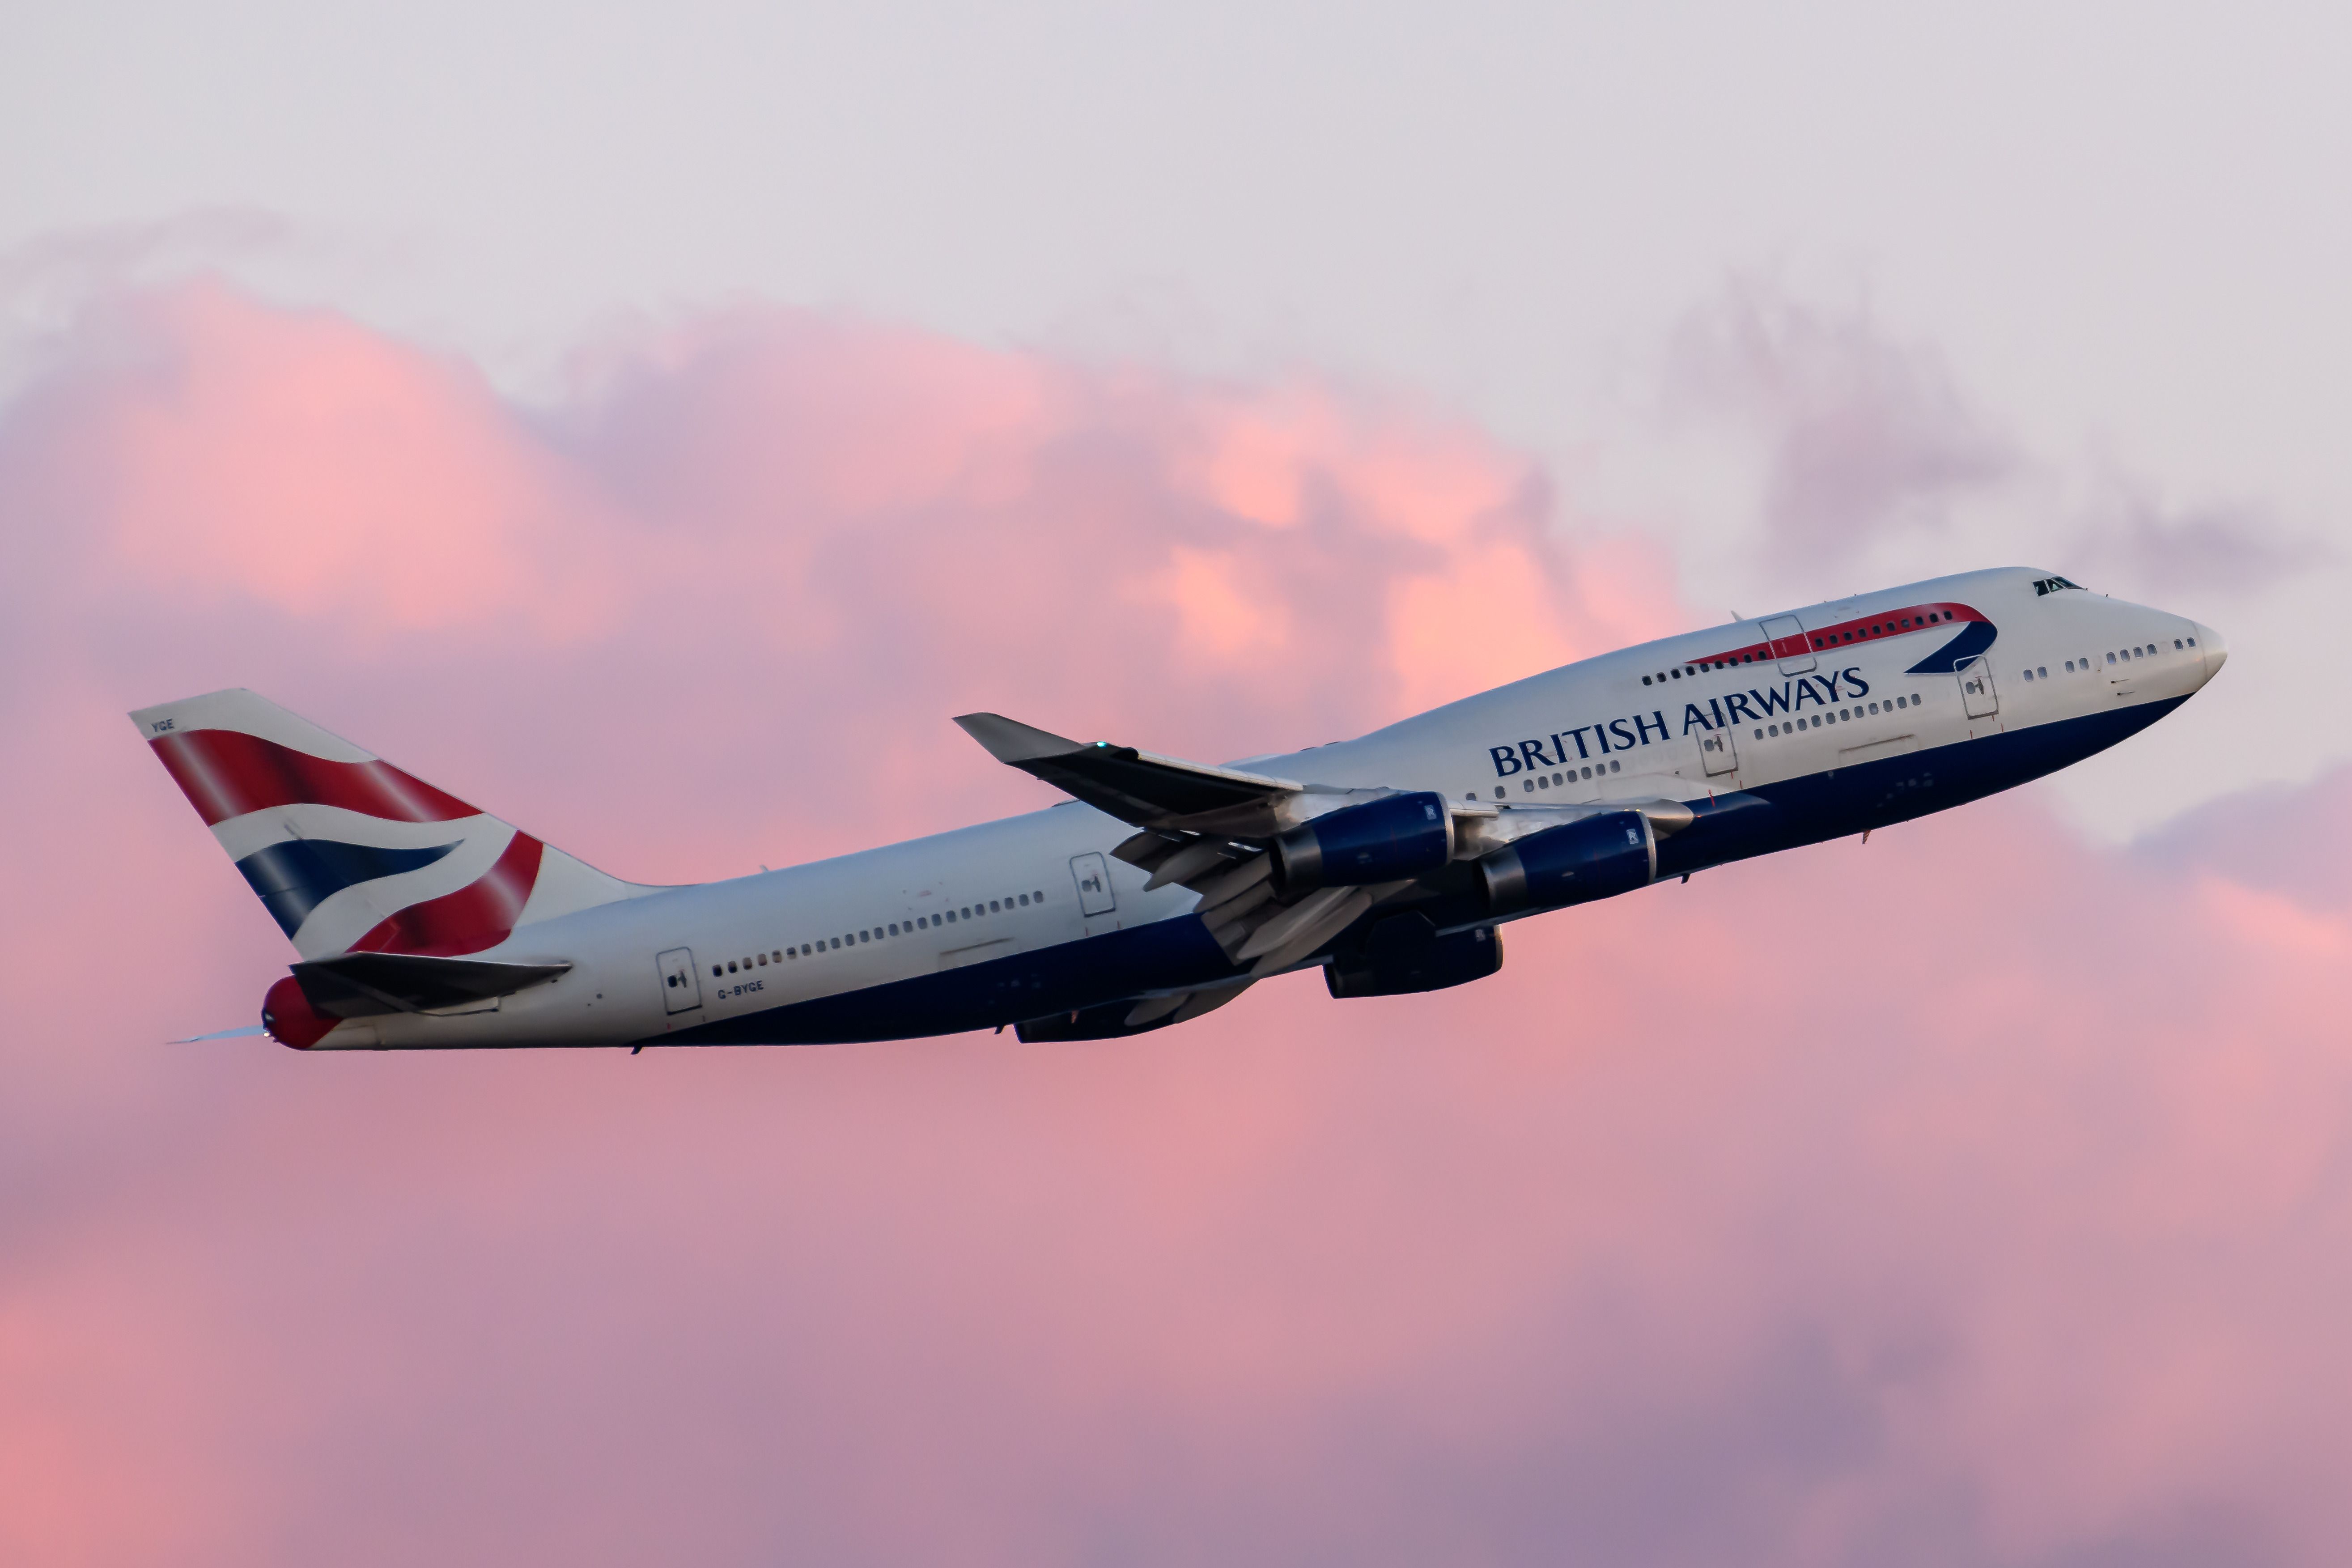 A British Airways Boeing 747 taking off at sunset.